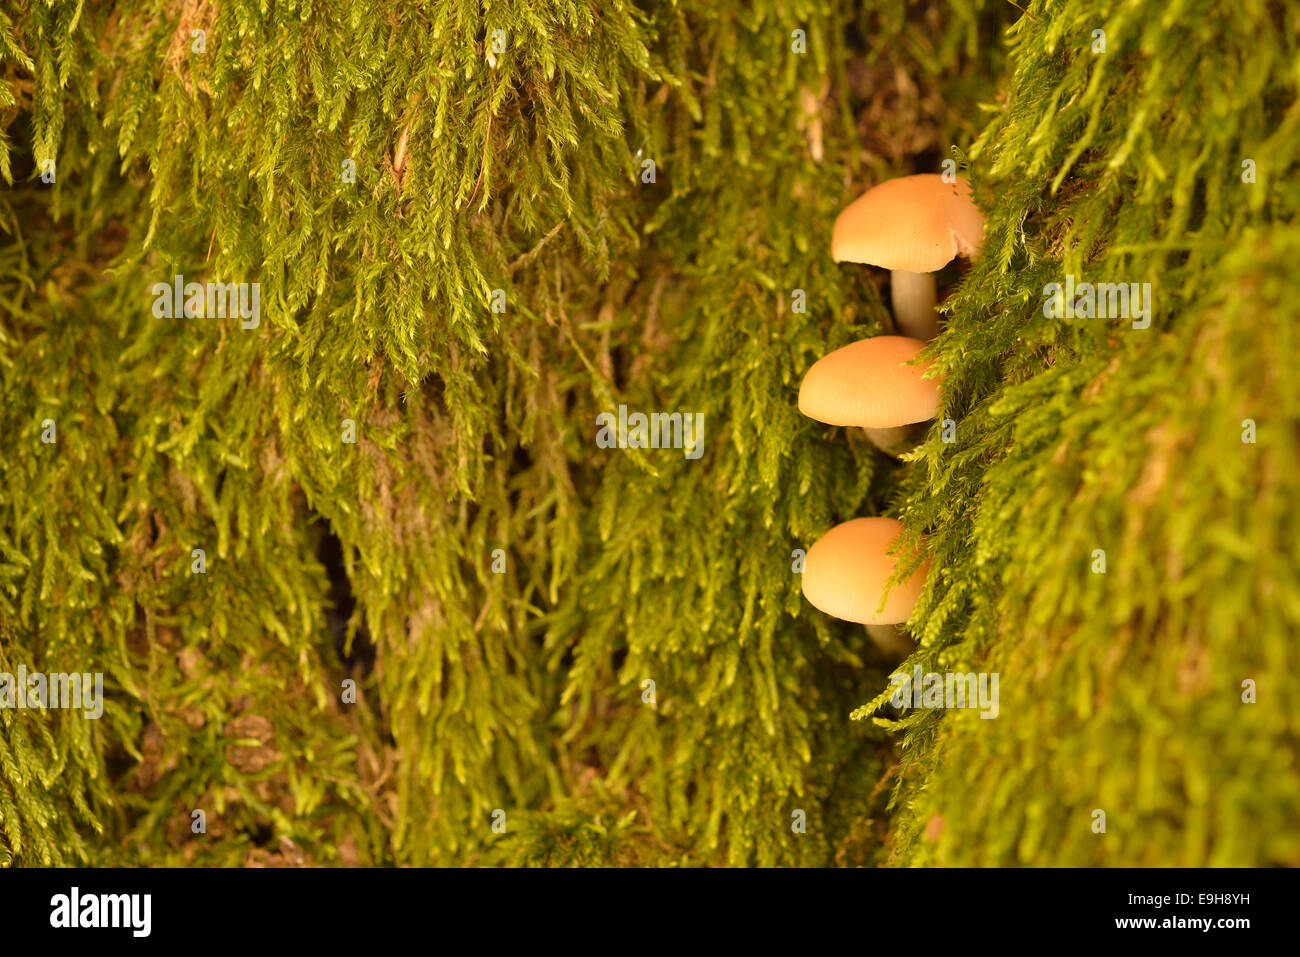 Les champignons non identifié, émergeant d'une fissure en bois au milieu de la mousse, Saxe-Anhalt, Allemagne Banque D'Images